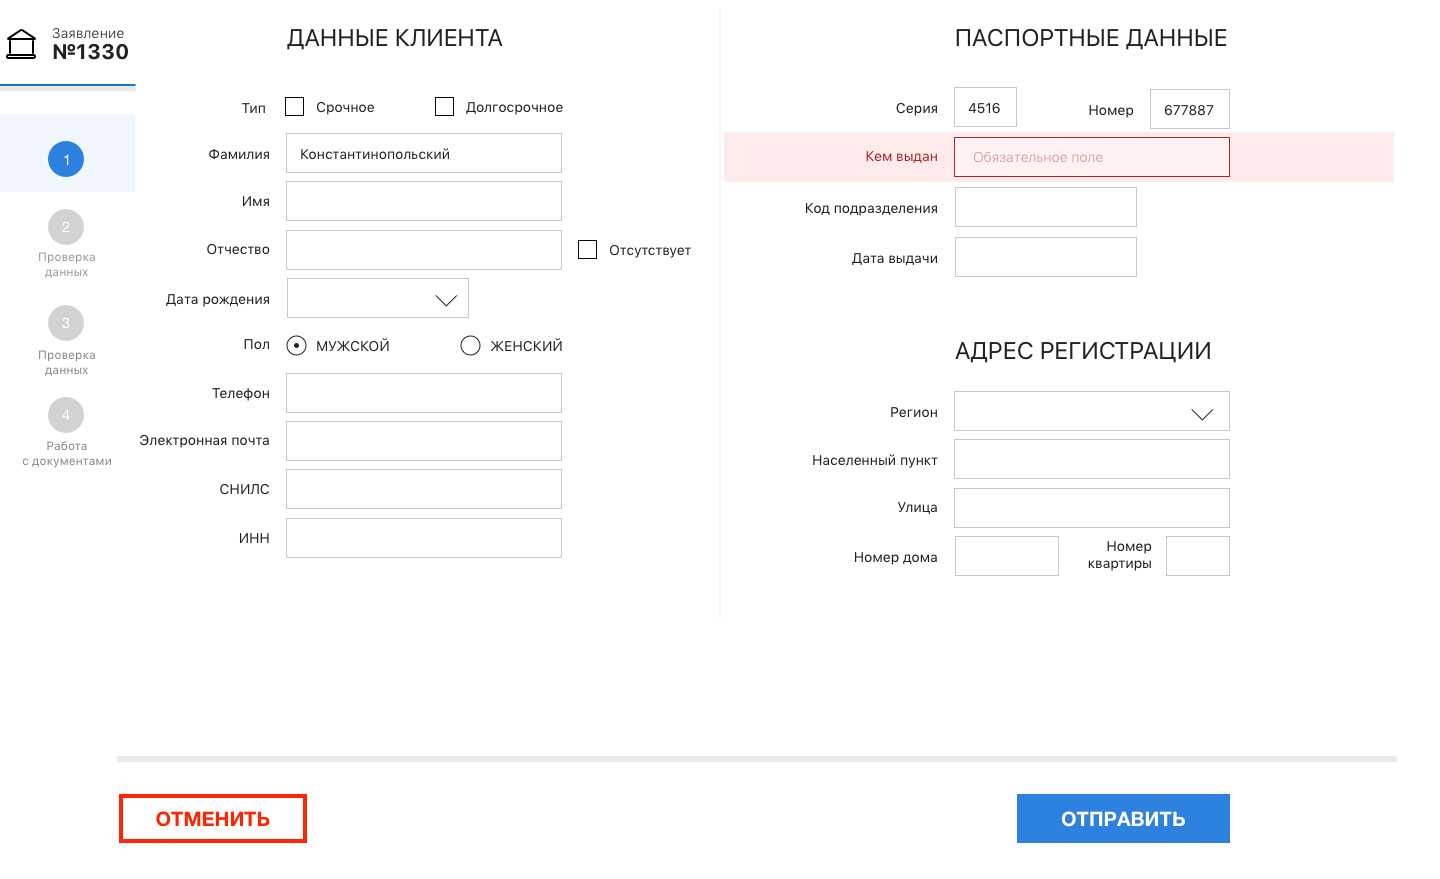 Wordpress ajax. делаем вывод поста в модальном окне по нажатию кнопки | xakplant.ru